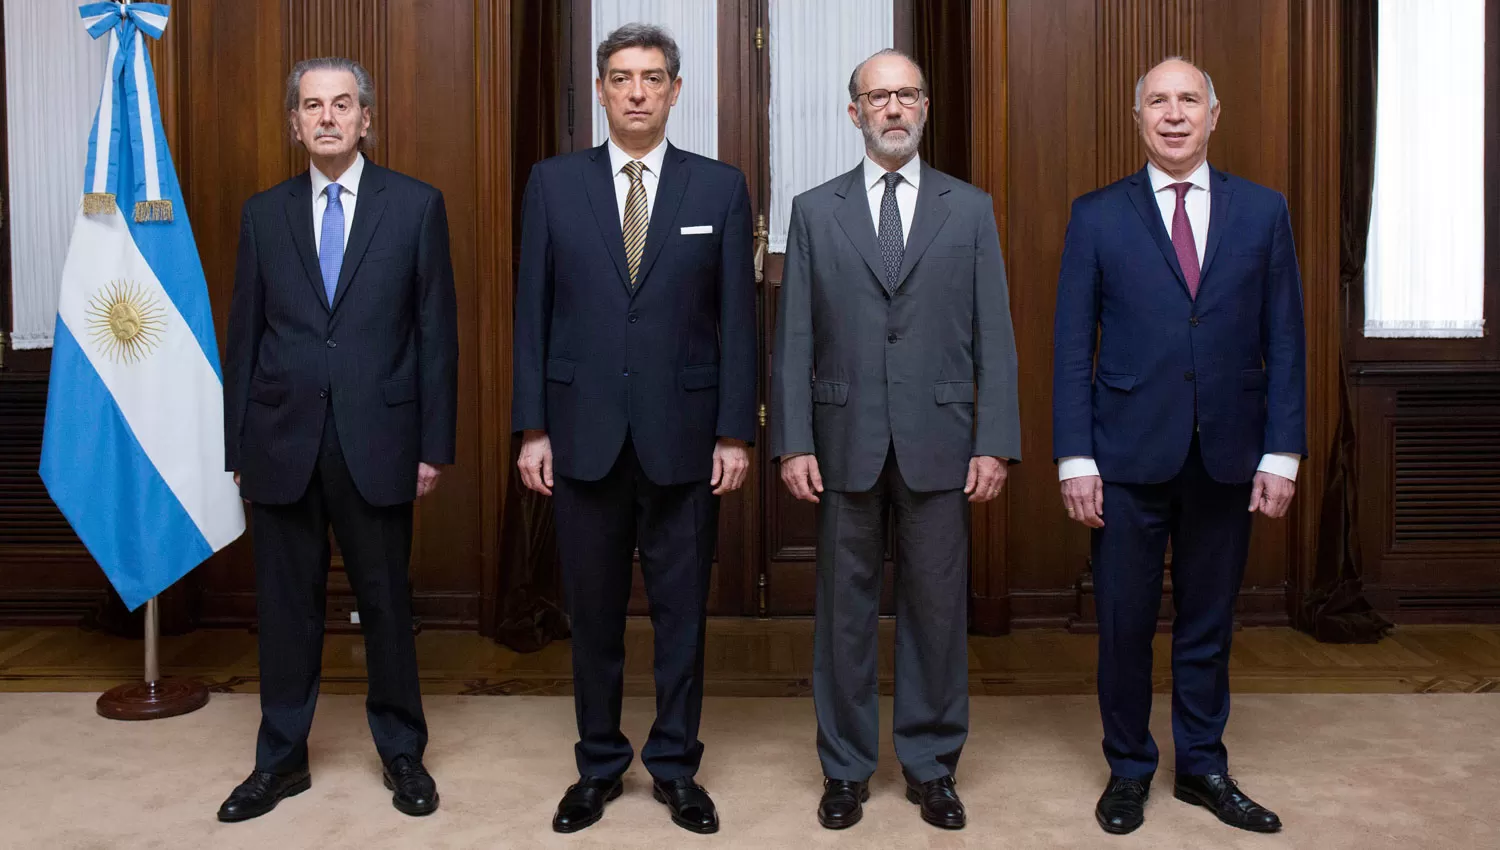 JUECES DE LA CORTE SUPREMA. Juan Carlos Maqueda, Horacio Rosatti, Carlos Rosenkrantz y Ricardo Lorenzetti.